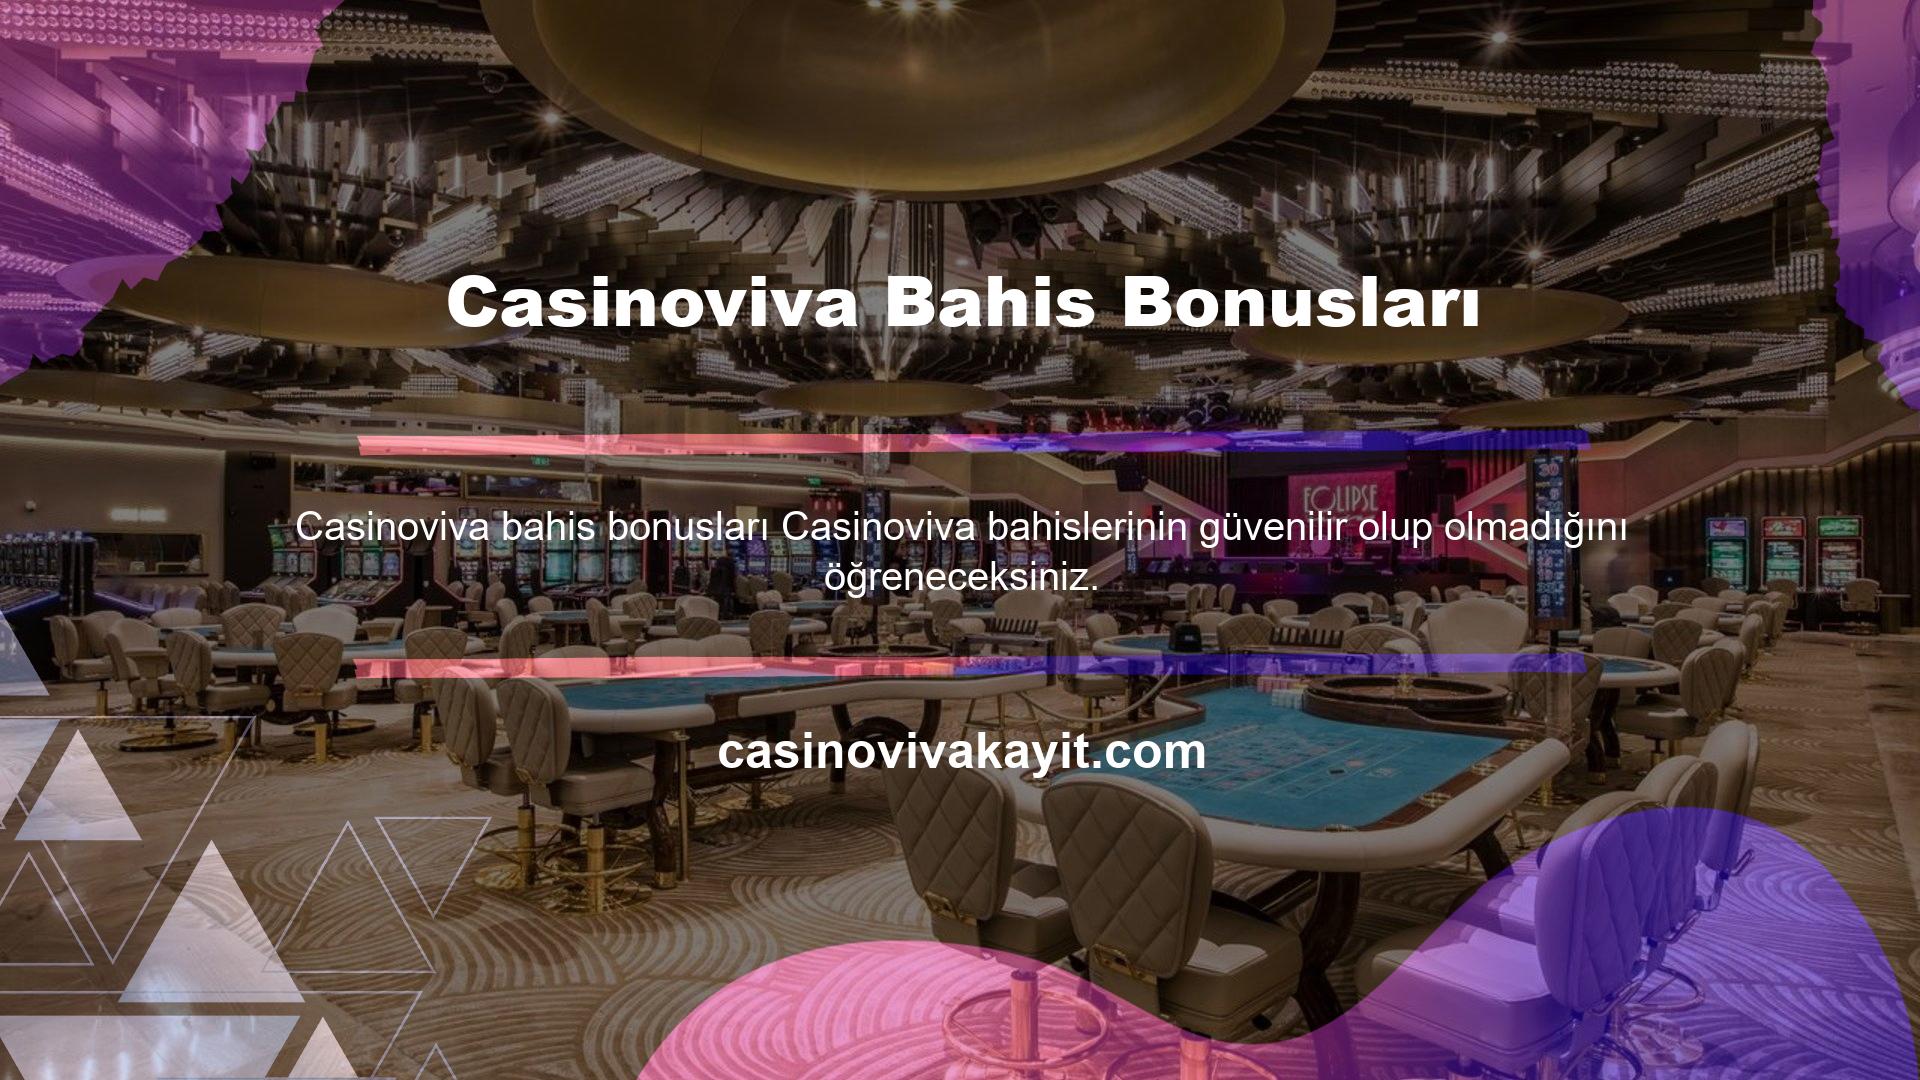 Casinoviva Bahis Bonusları Rulet oyuncuları, poker piyasasında bahis yaparken nelere dikkat etmeleri gerektiğini ve nasıl para kazanılacağını öğrenecekler